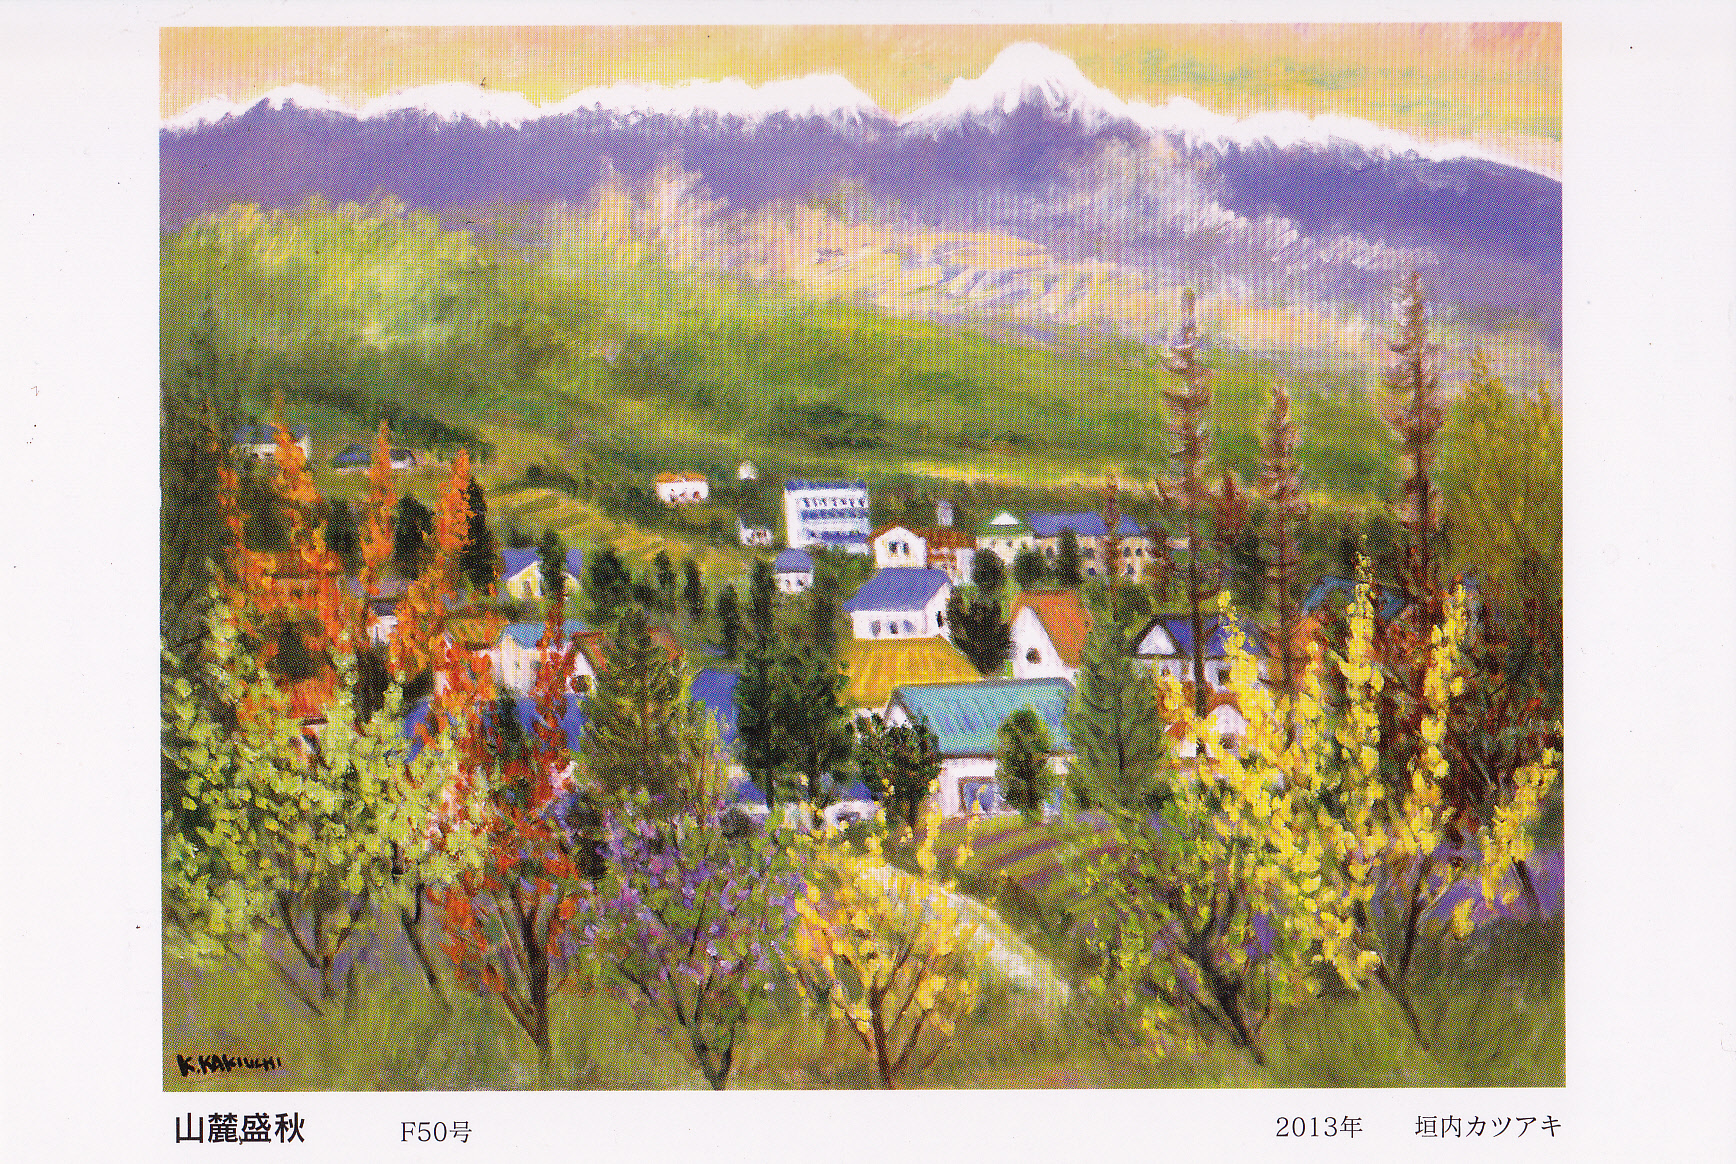 垣内カツアキ、「山湖秋景(信州の山と湖)」、希少画集の額装画、四季、風景ご了承お願いします